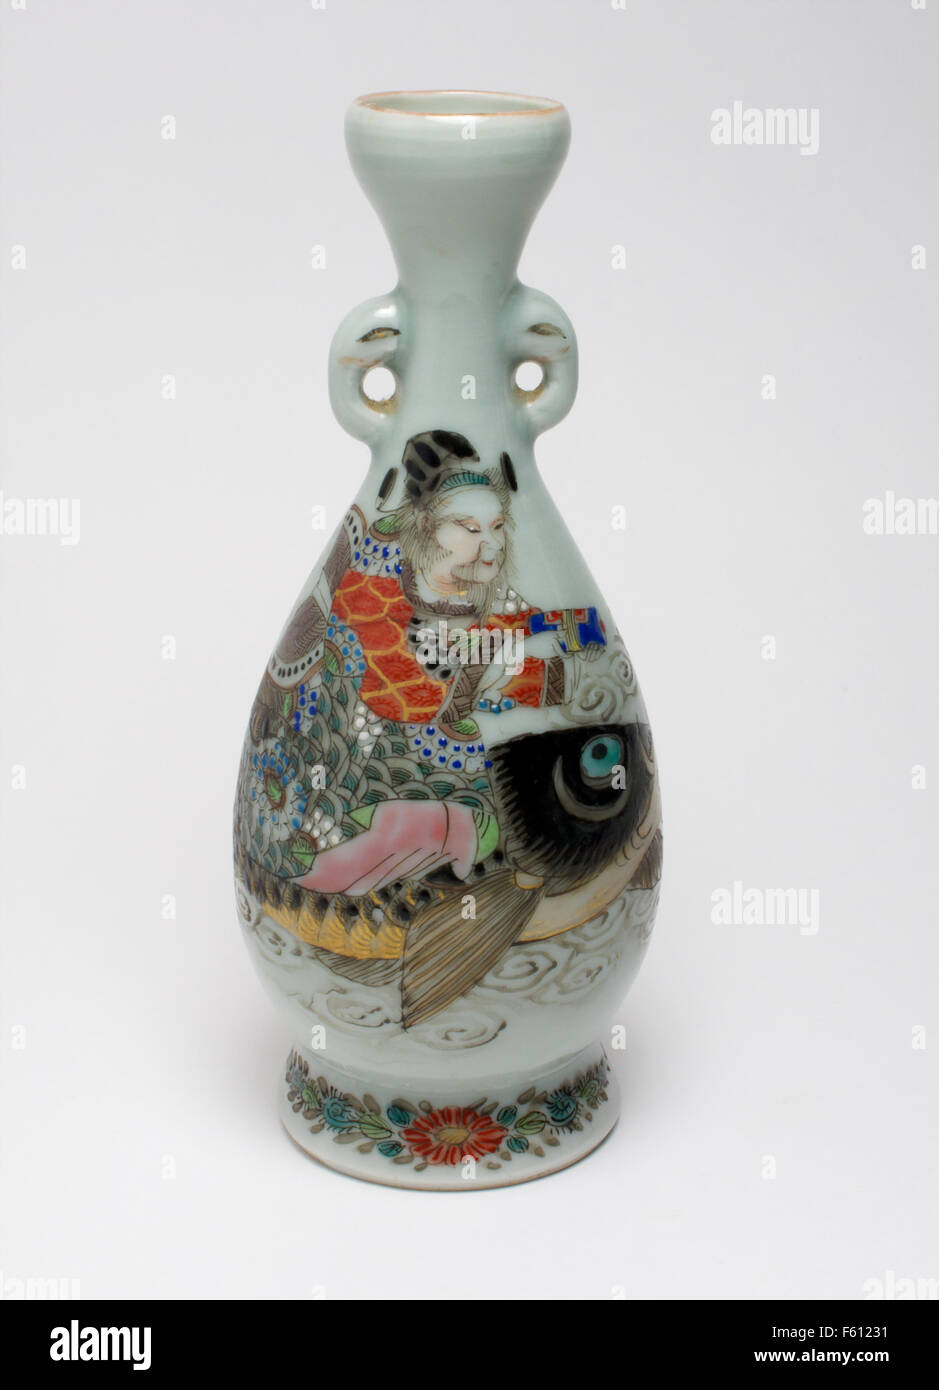 Antique 19thc. Japanese celadon and enamel vase Stock Photo